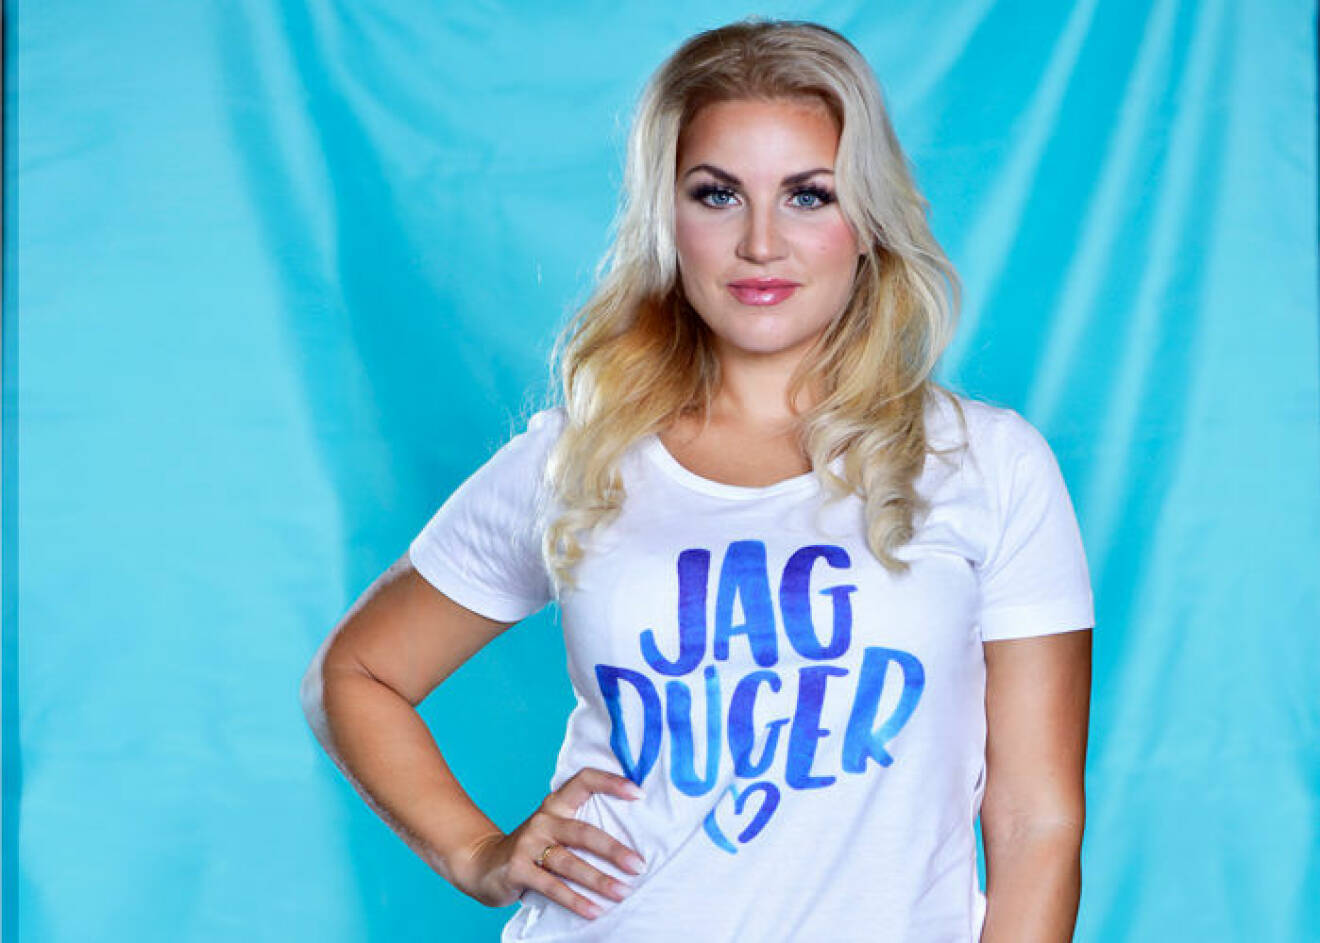 Laila är med och sprider budskapet att vi alla duger, i MåBra:s kampanj #JagDuger.